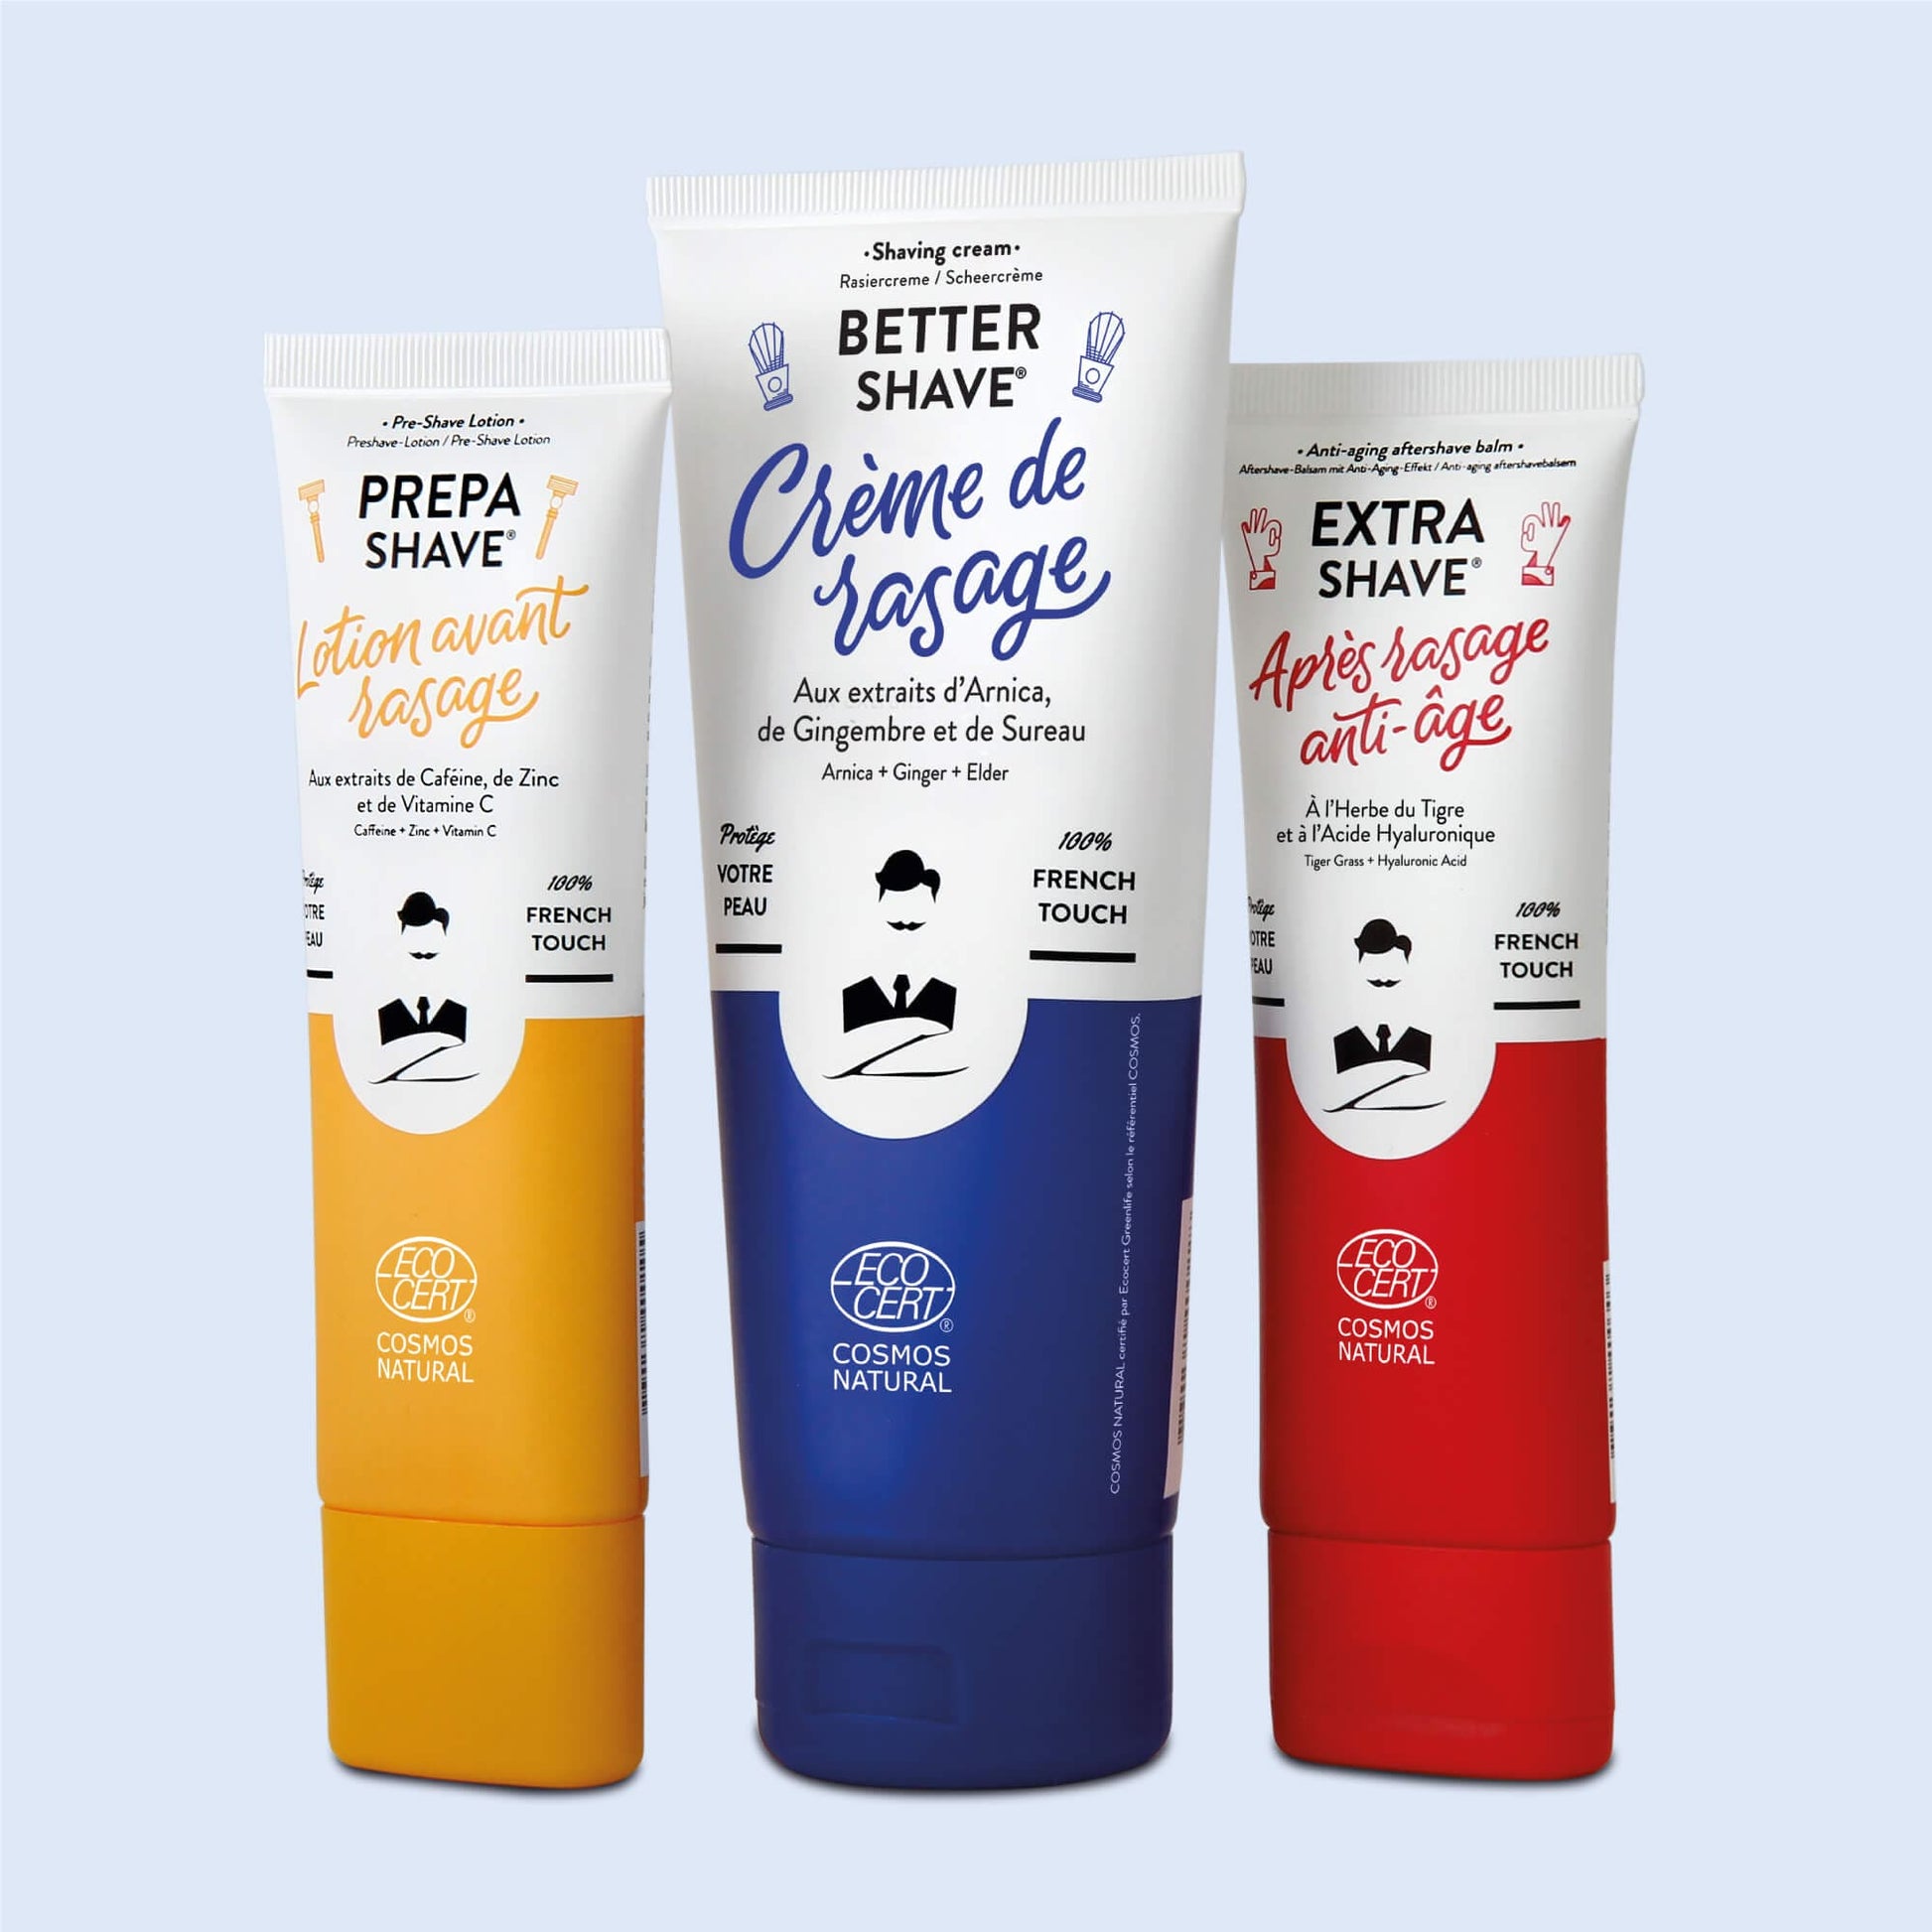 Trio de soins pour le rasage de Monsieur BARBIER dans le coffret SUPER DADDY BOX, incluant une crème de rasage, une lotion avant-rasage et un après-rasage anti-âge, avec emballages colorés en jaune, bleu et rouge.